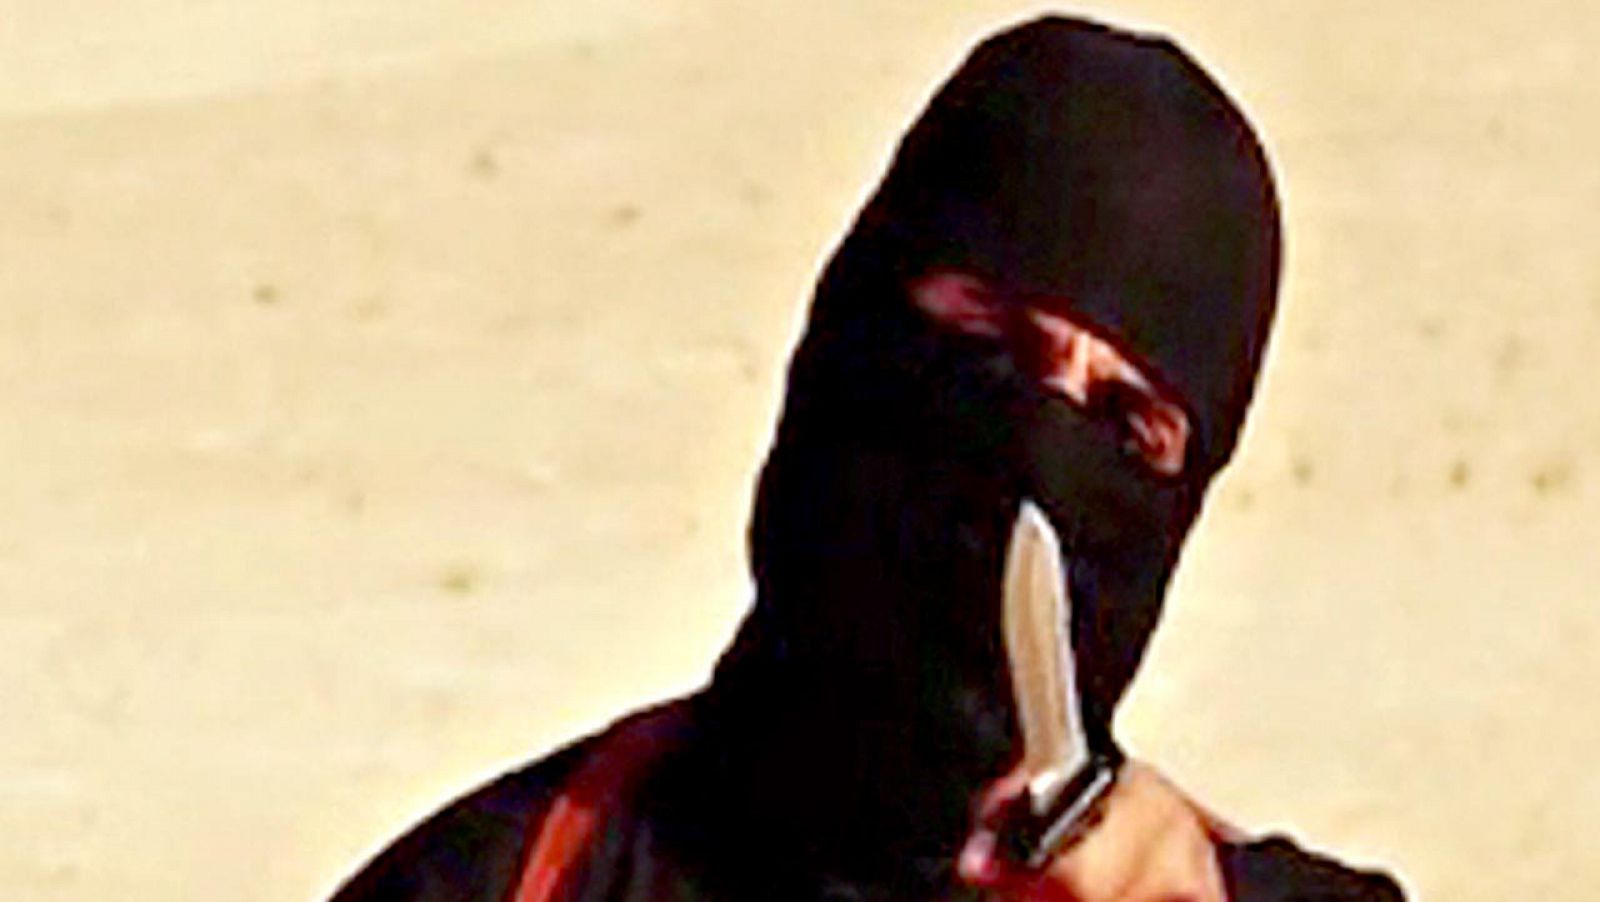 Imagen de Mohamed Emwazi, conocido como "Jihadi John", en uno de los vídeos que difundió el Estado Islámico con una decapitación